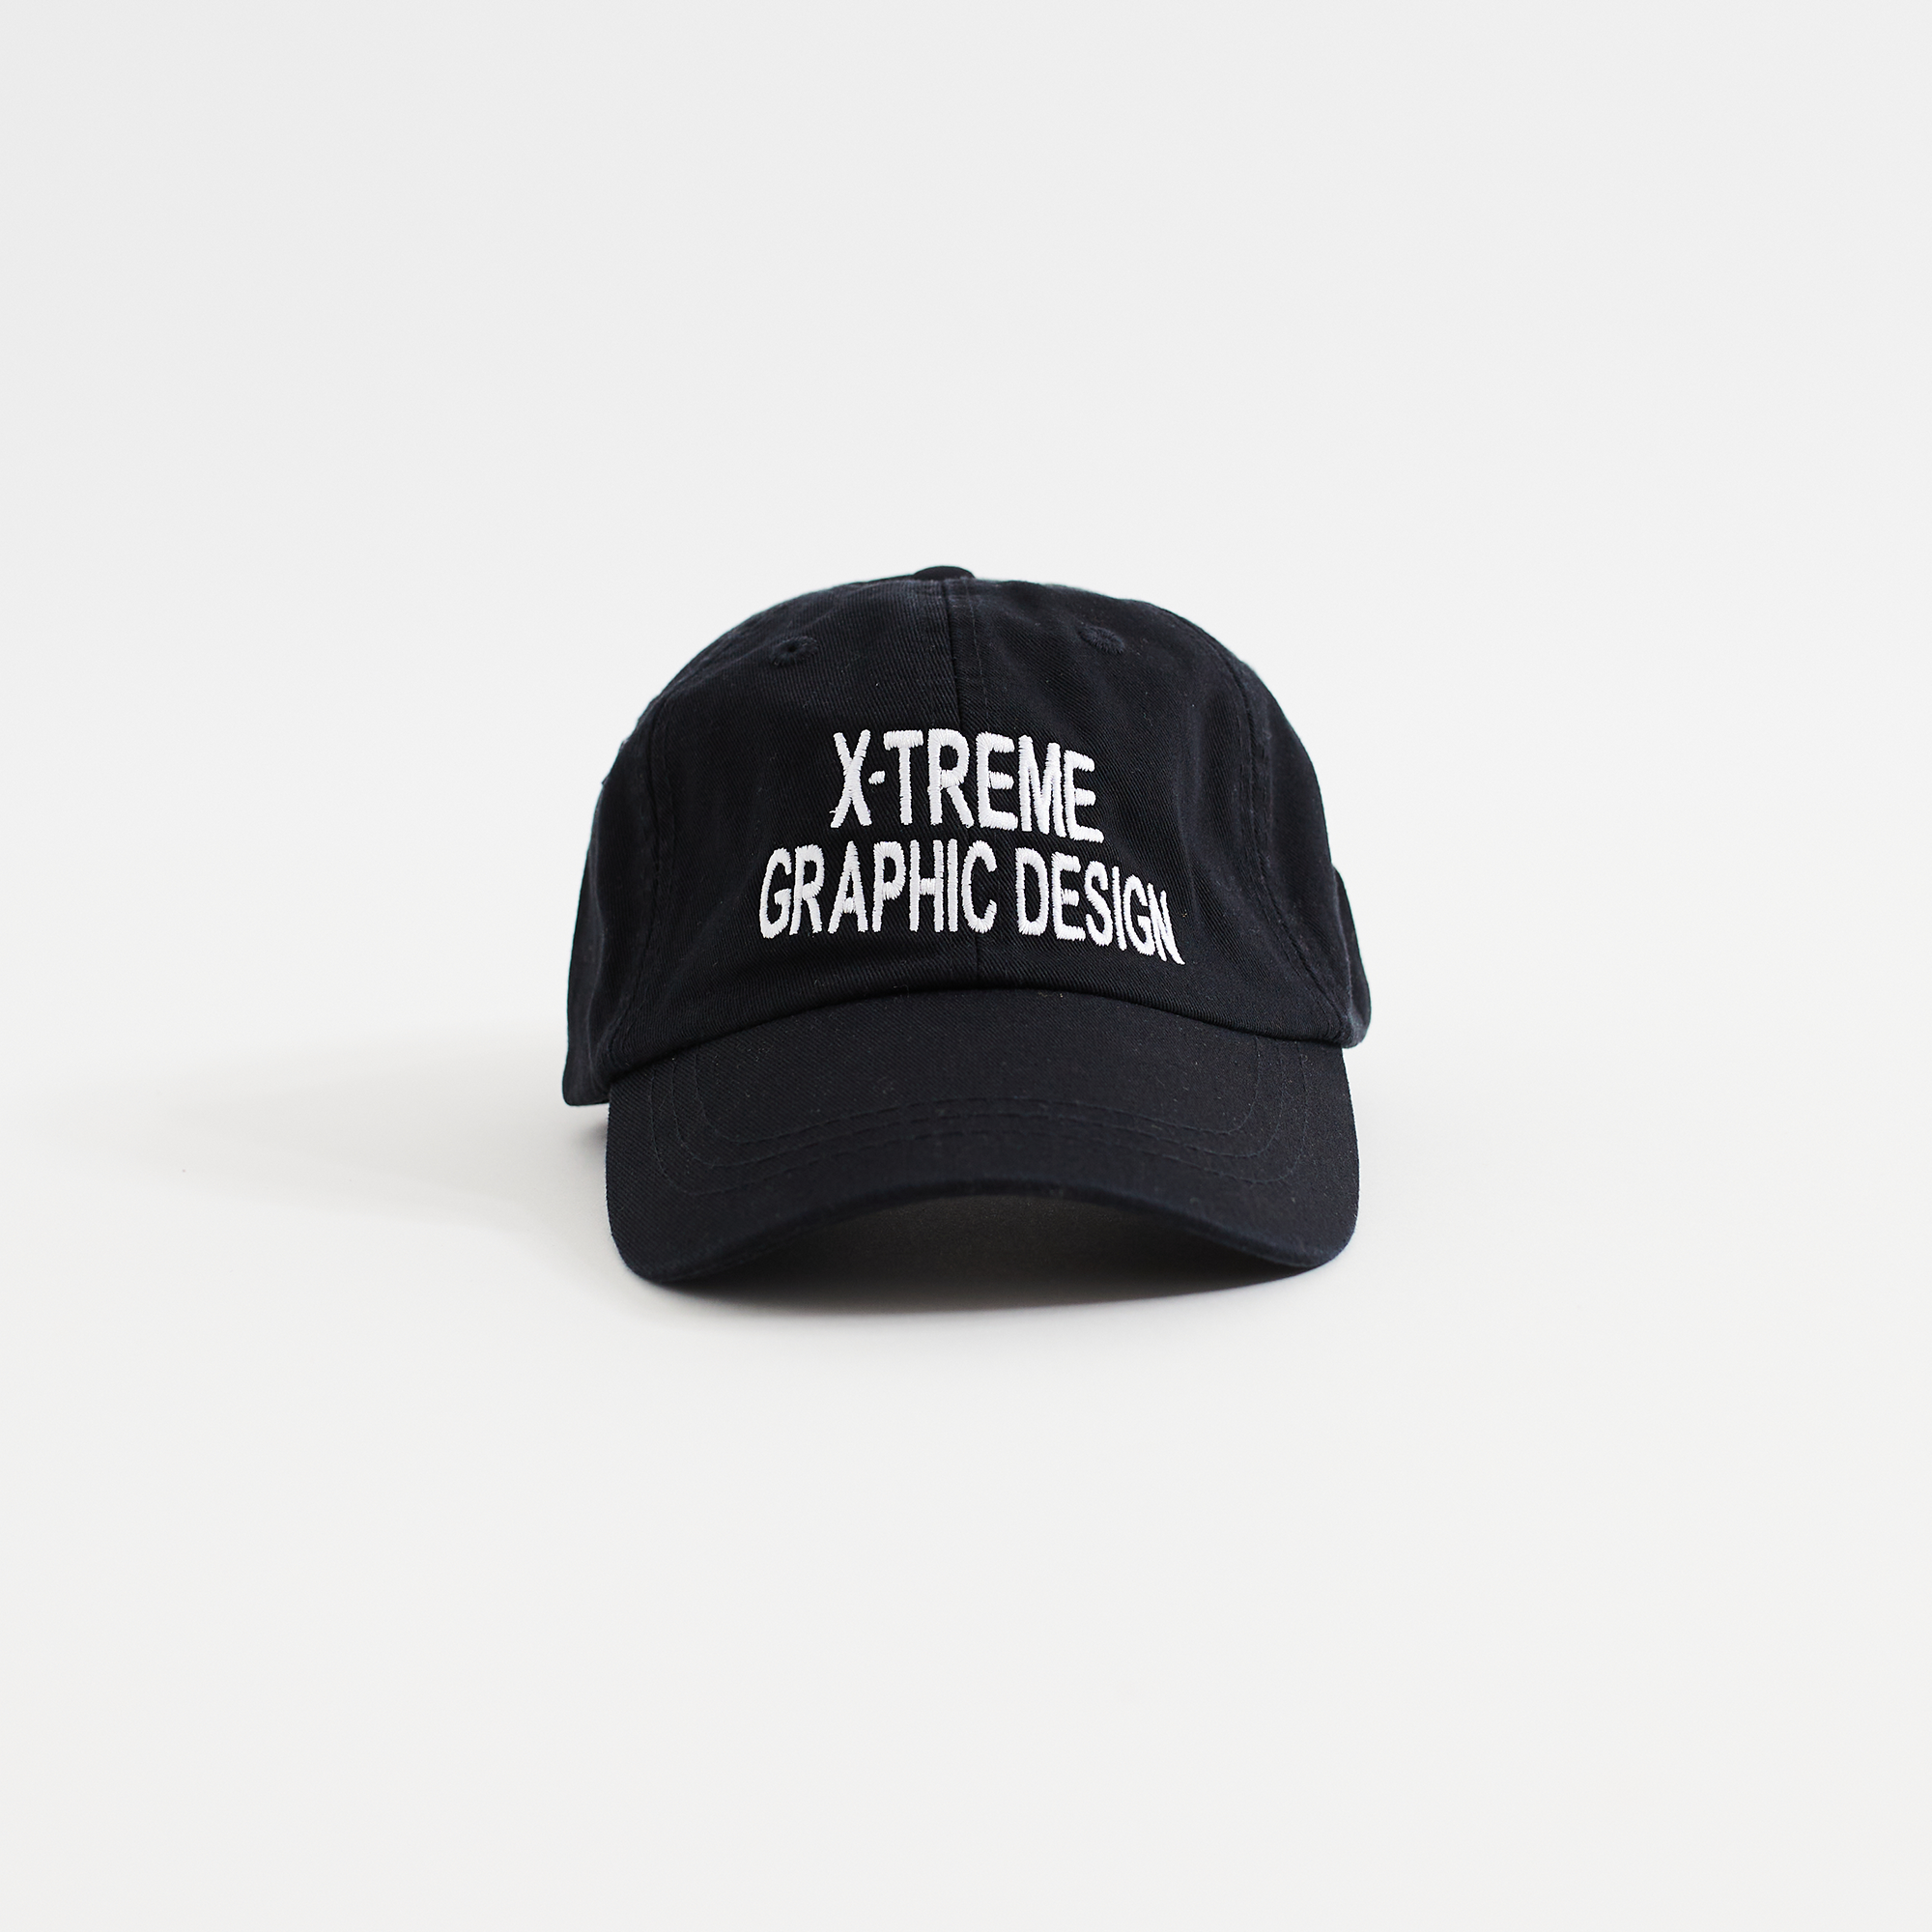 X-treme Graphic Design Cap (Black)